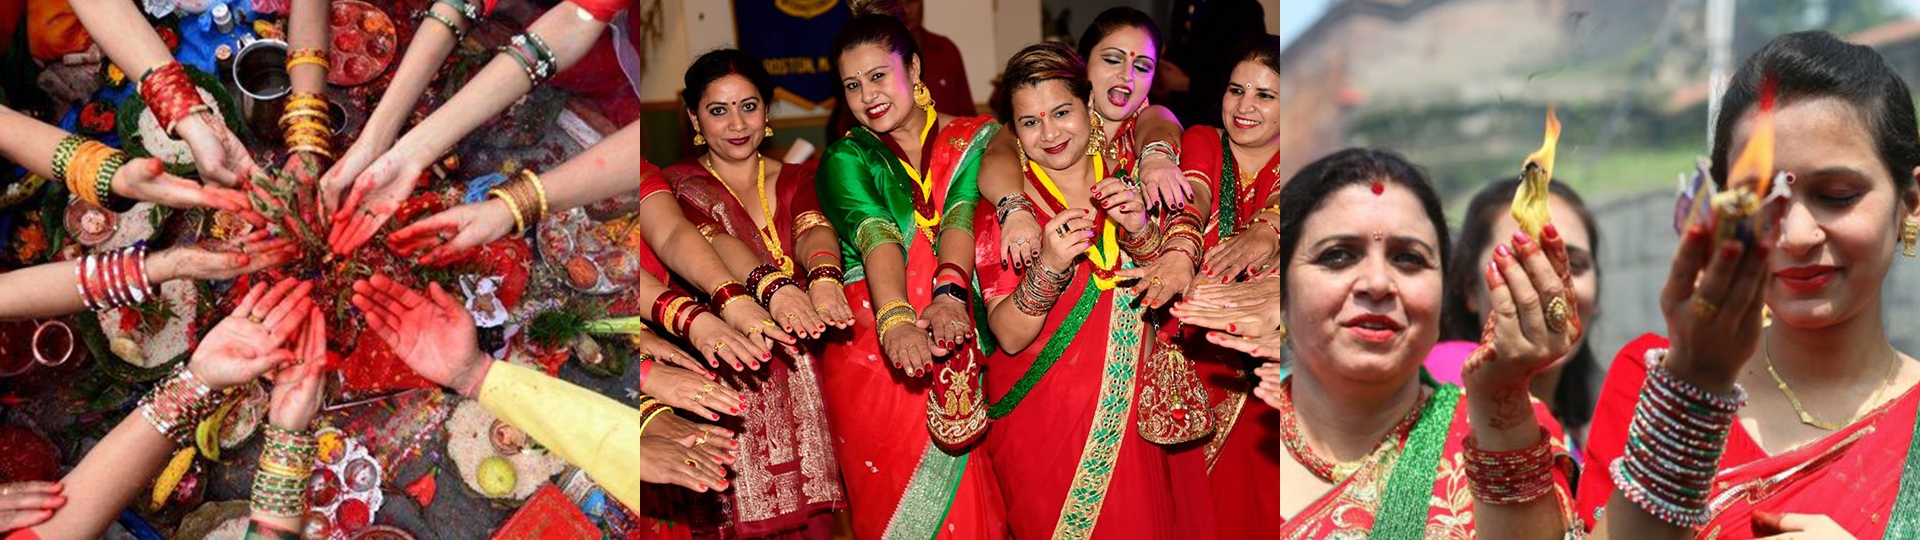 Teej Festival in Nepal The Popular Women's Festival in Nepal